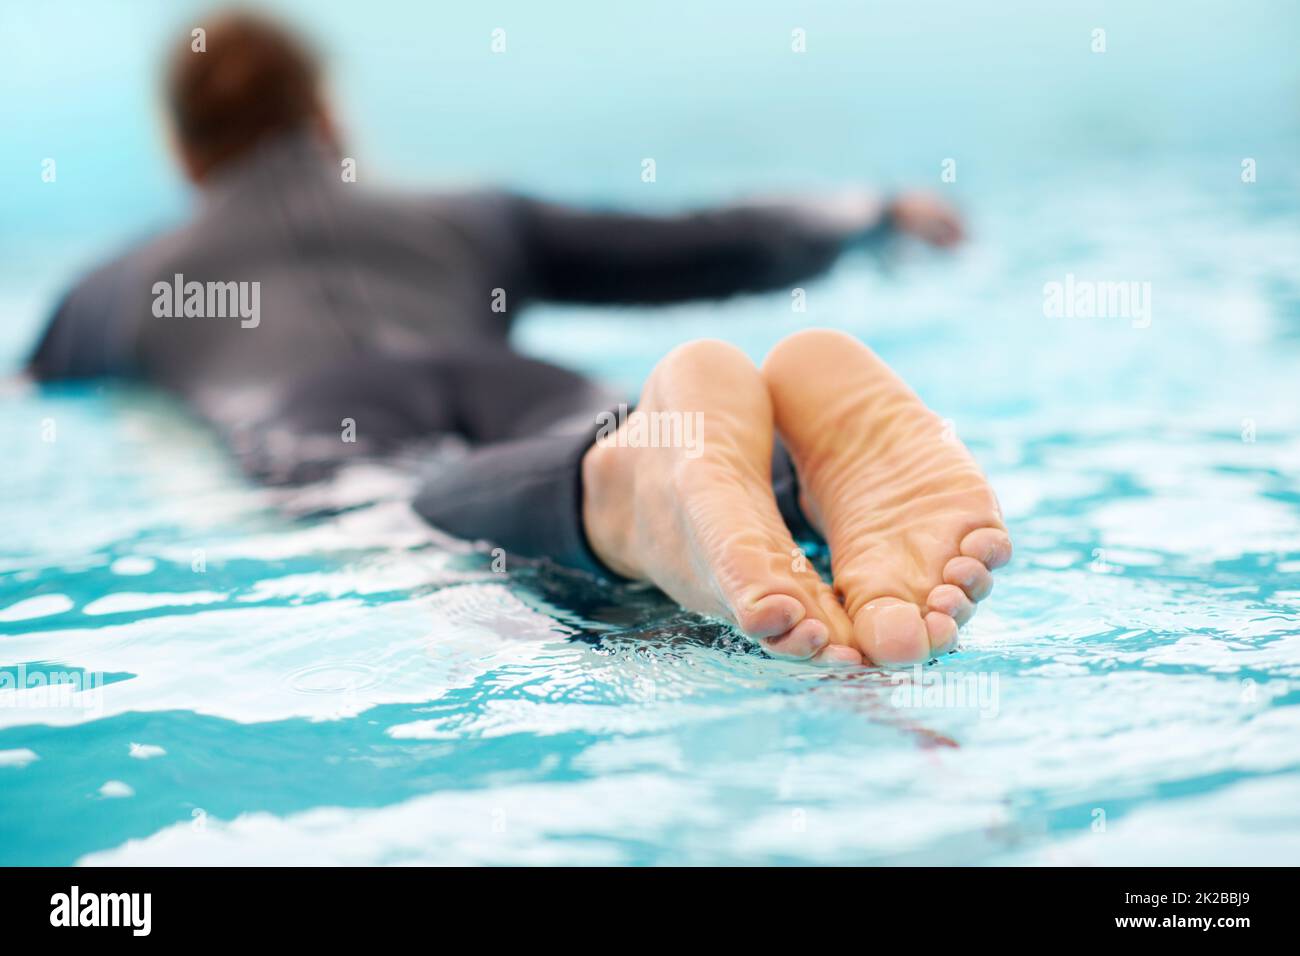 Eure Welle wartet auf euch. Rückansicht eines Mannes, der in klarem blauen Wasser surft. Stockfoto